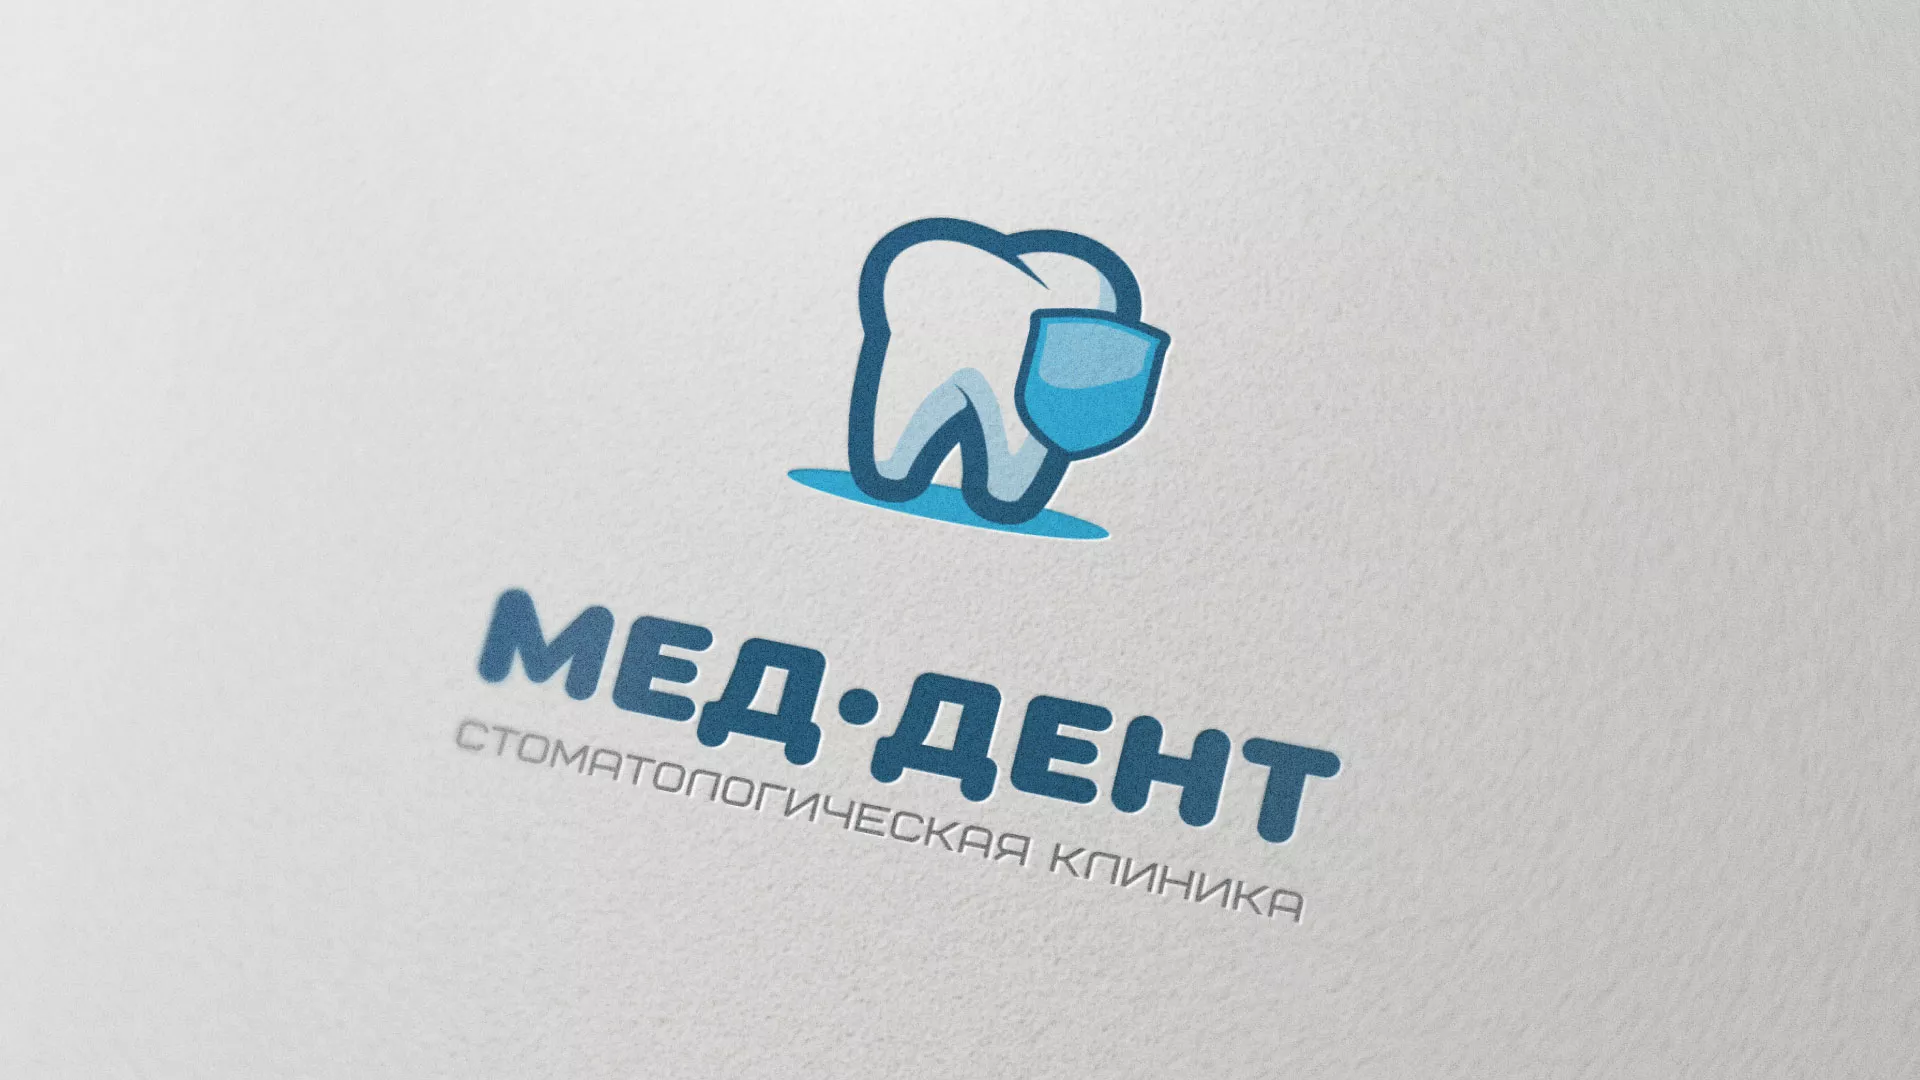 Разработка логотипа стоматологической клиники «МЕД-ДЕНТ» в Кирсе